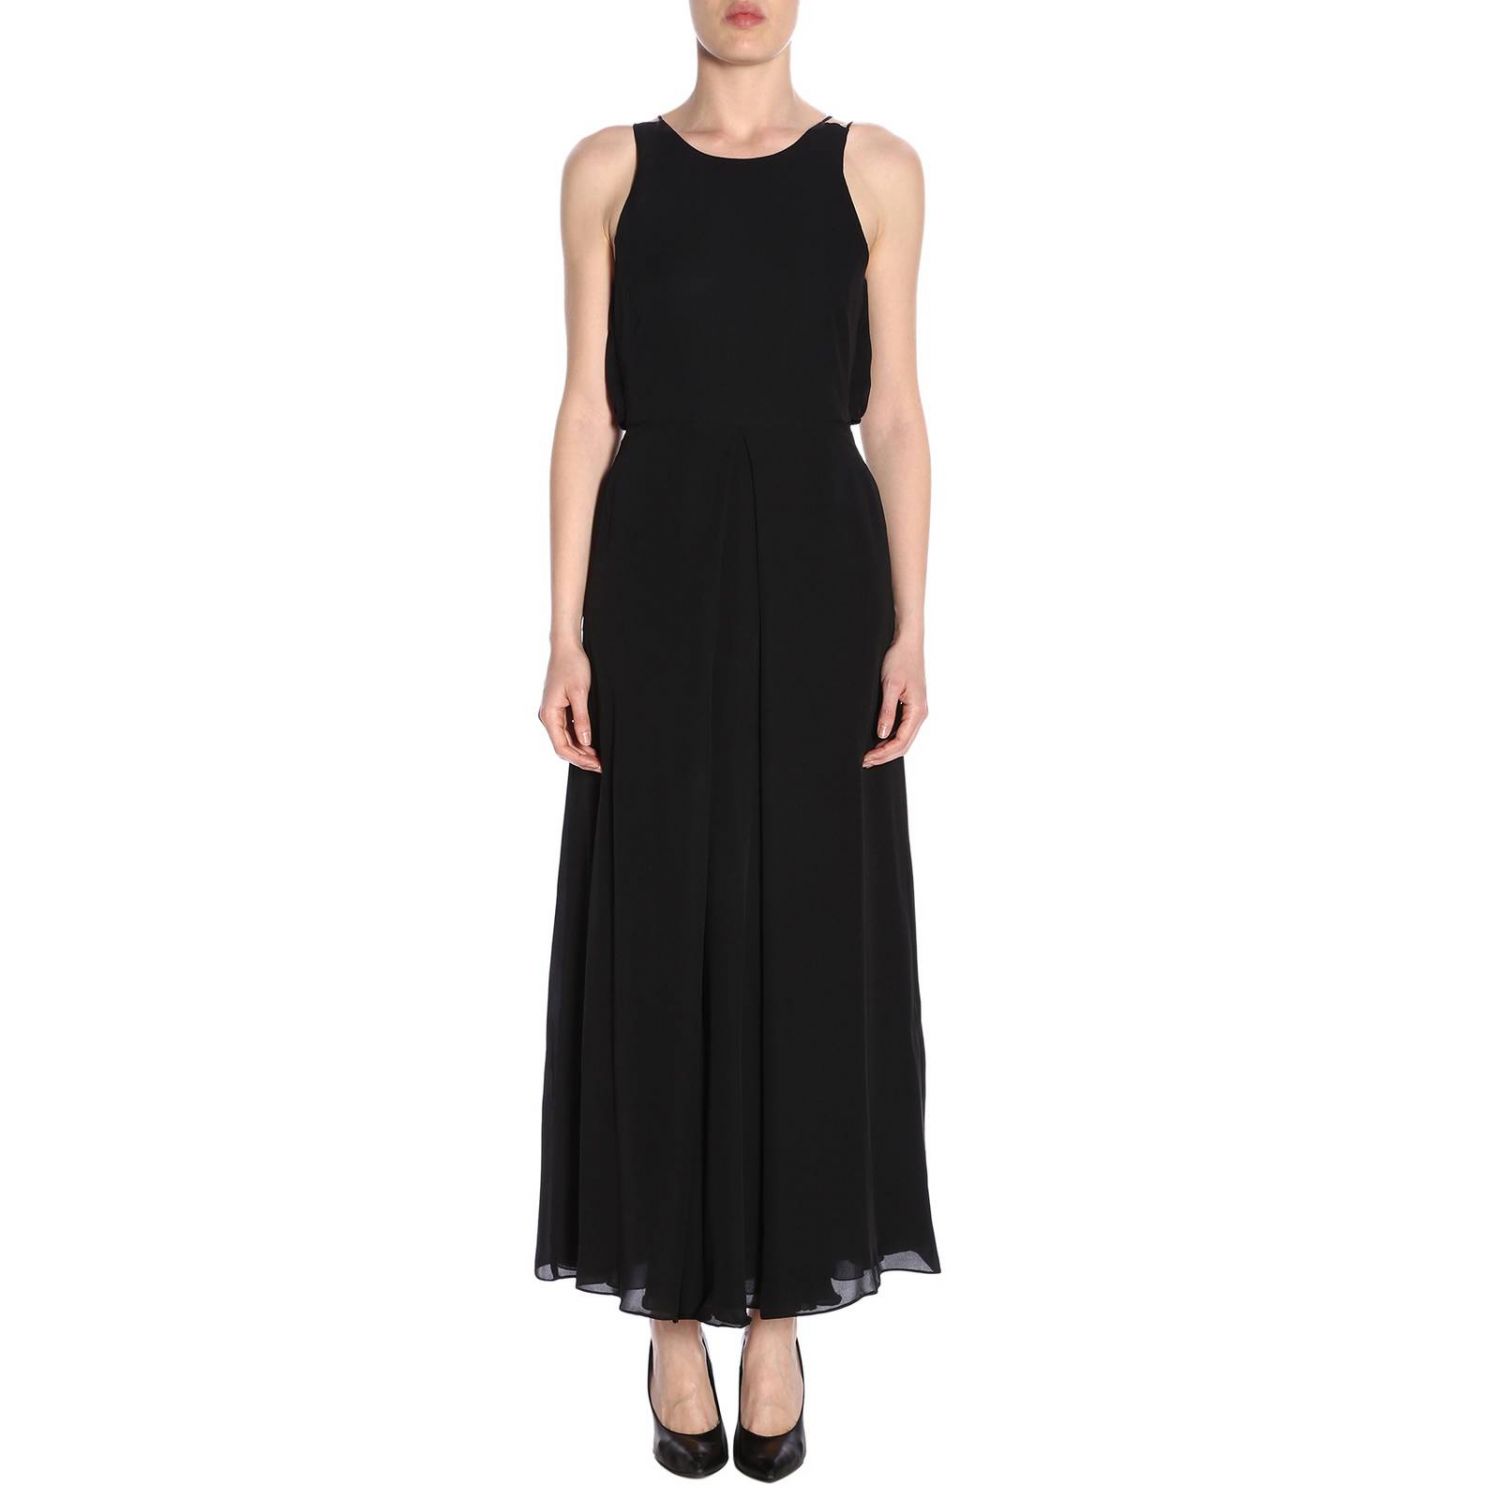 Emporio Armani Outlet: Dress women | Dress Emporio Armani Women Black ...